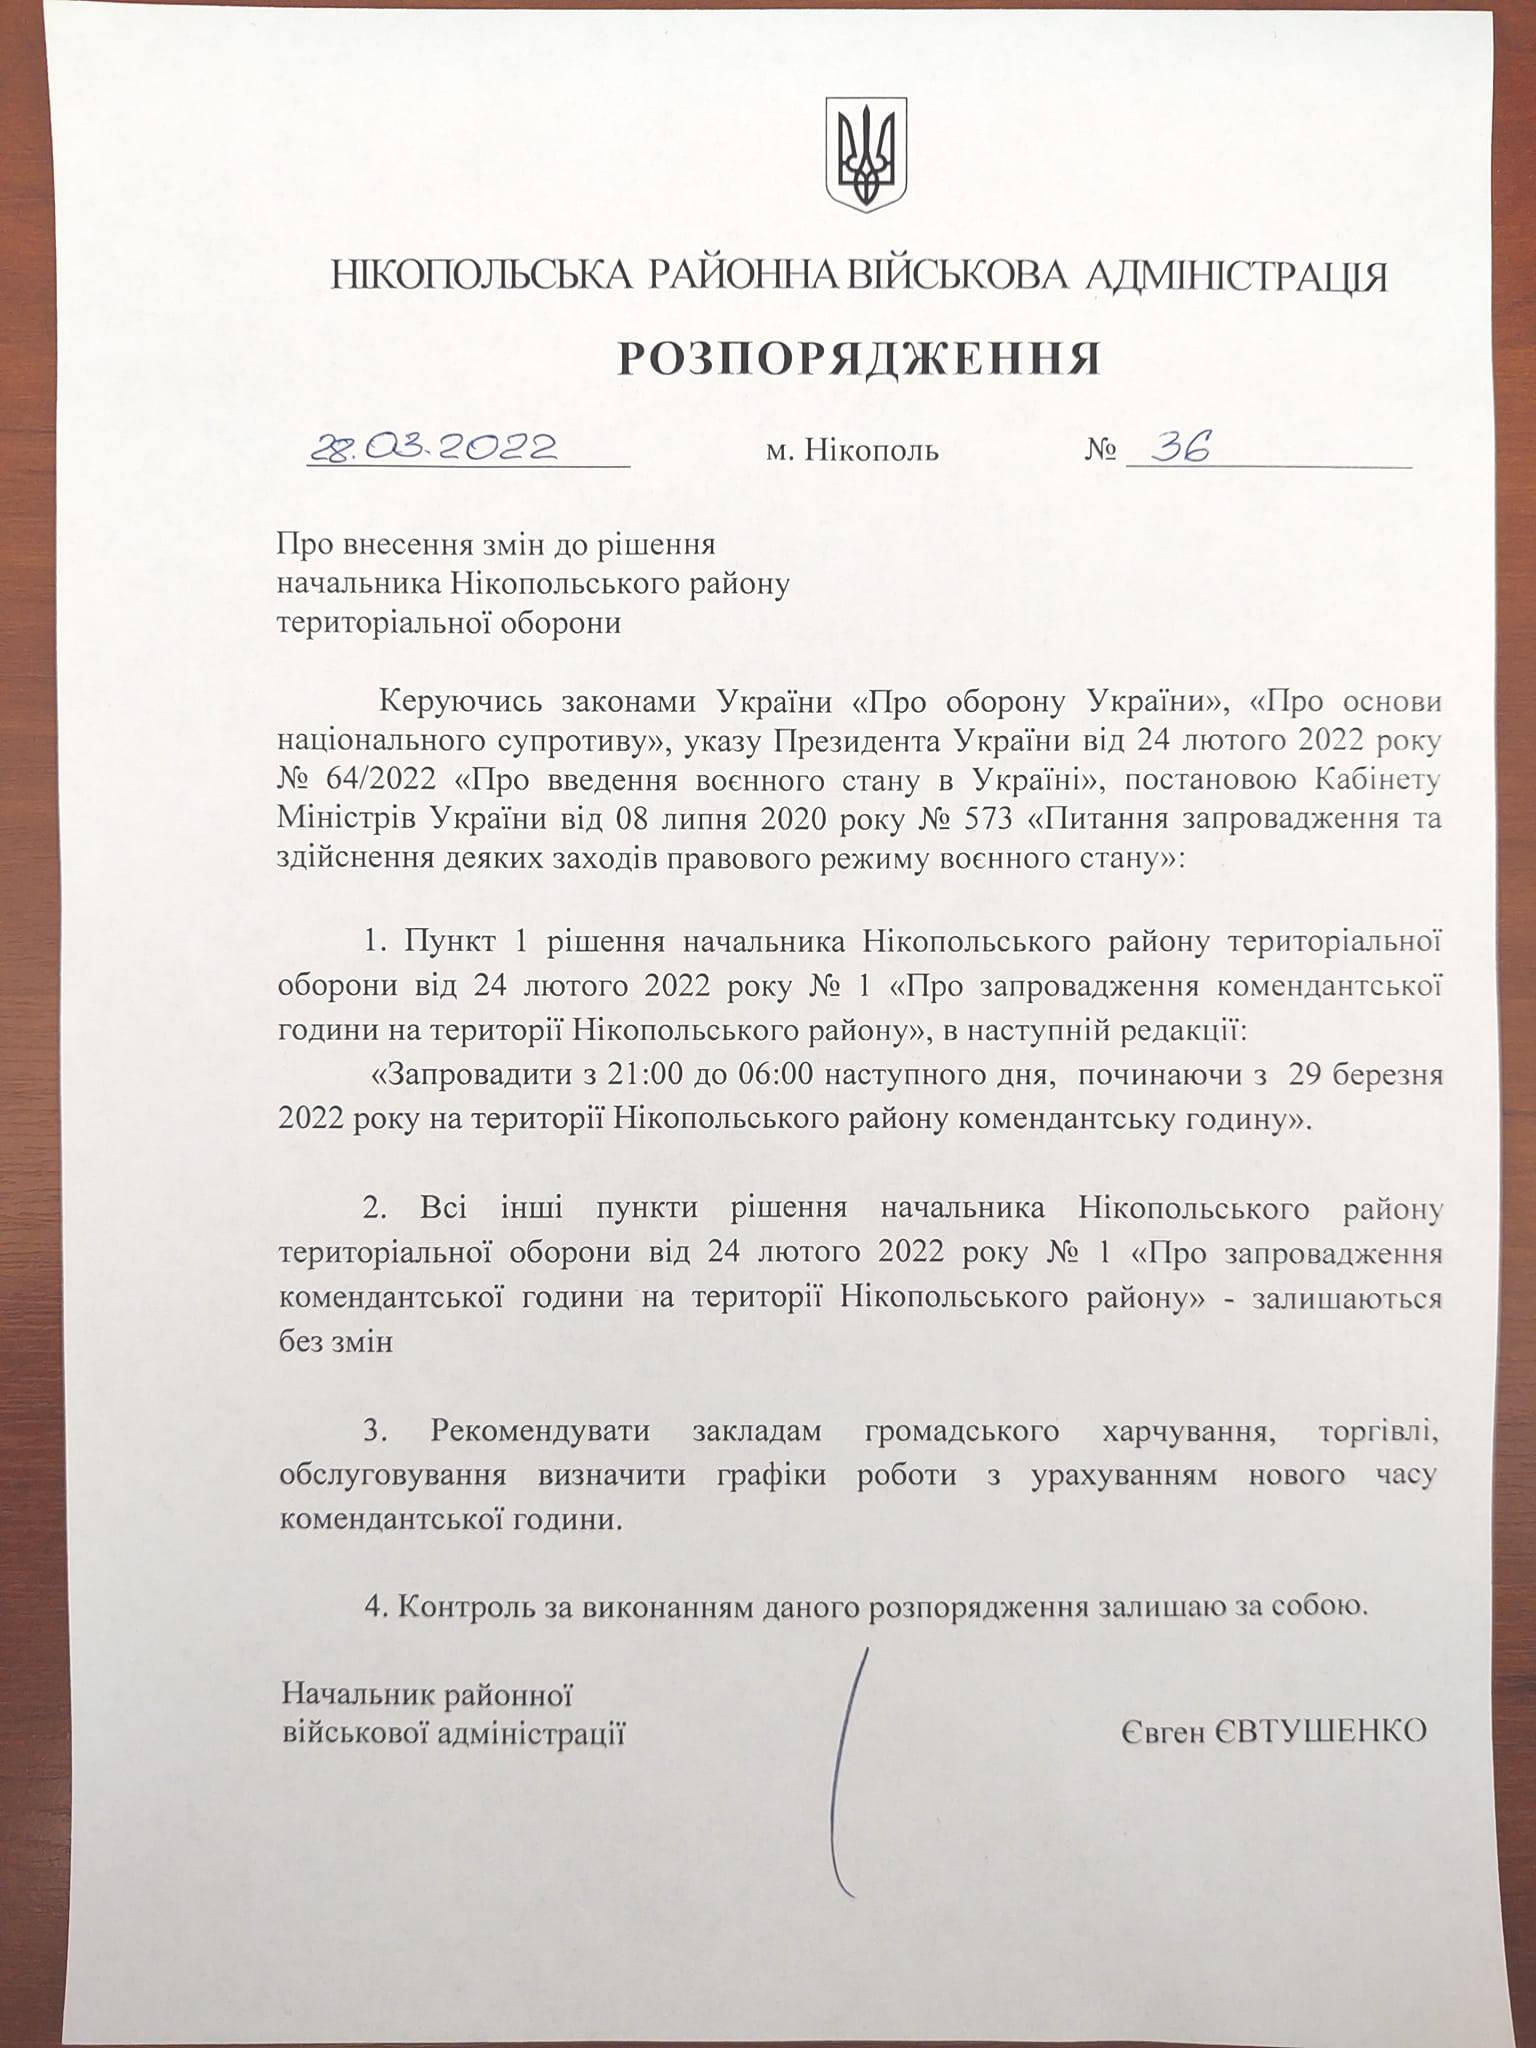 На Дніпропетровщині змінили тривалість комендантської години з 29 березня